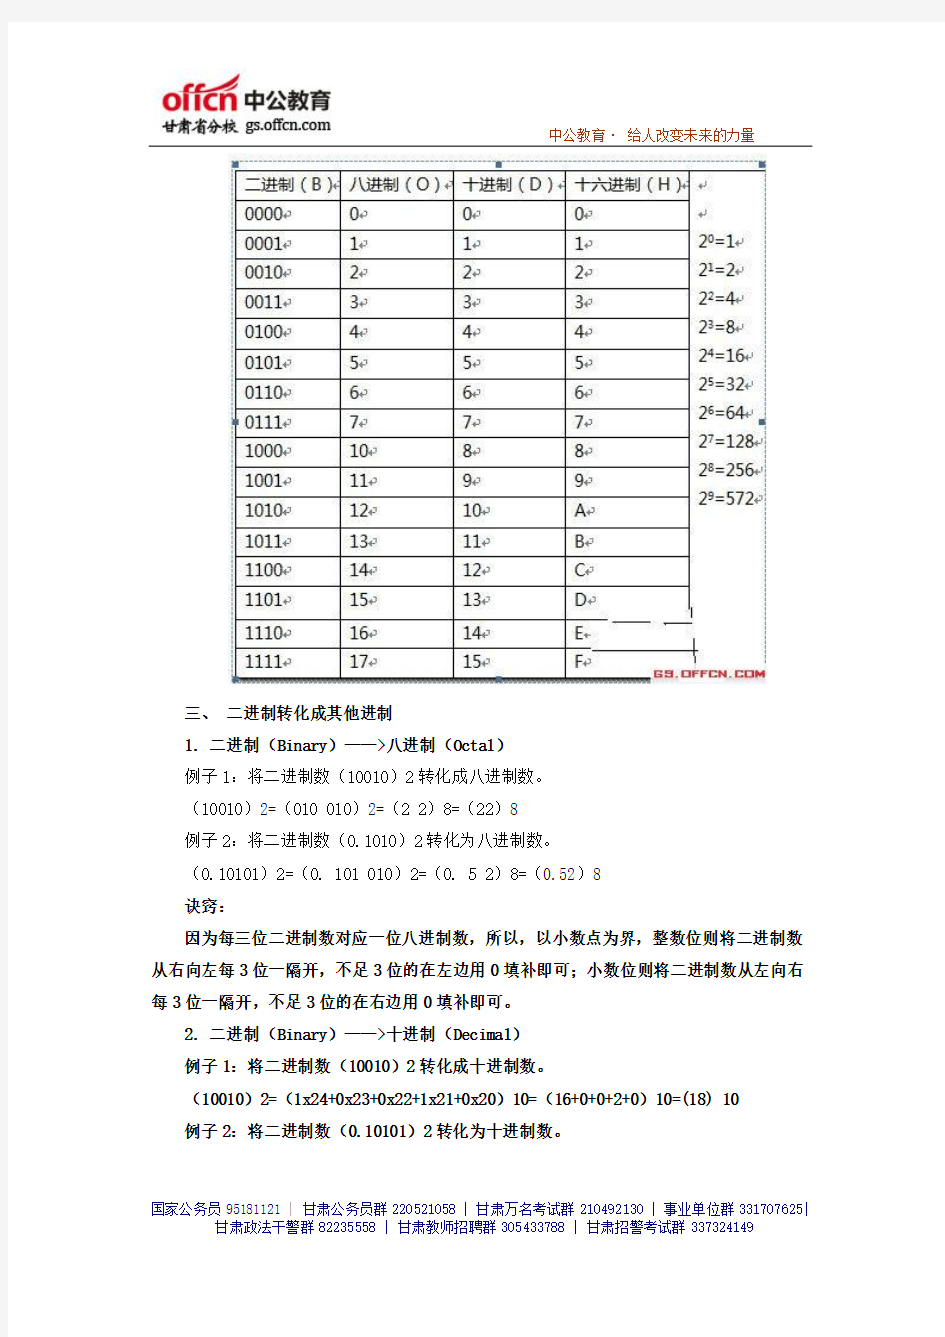 2014年甘肃大学生村官考试模拟真题及答案解析- (130)